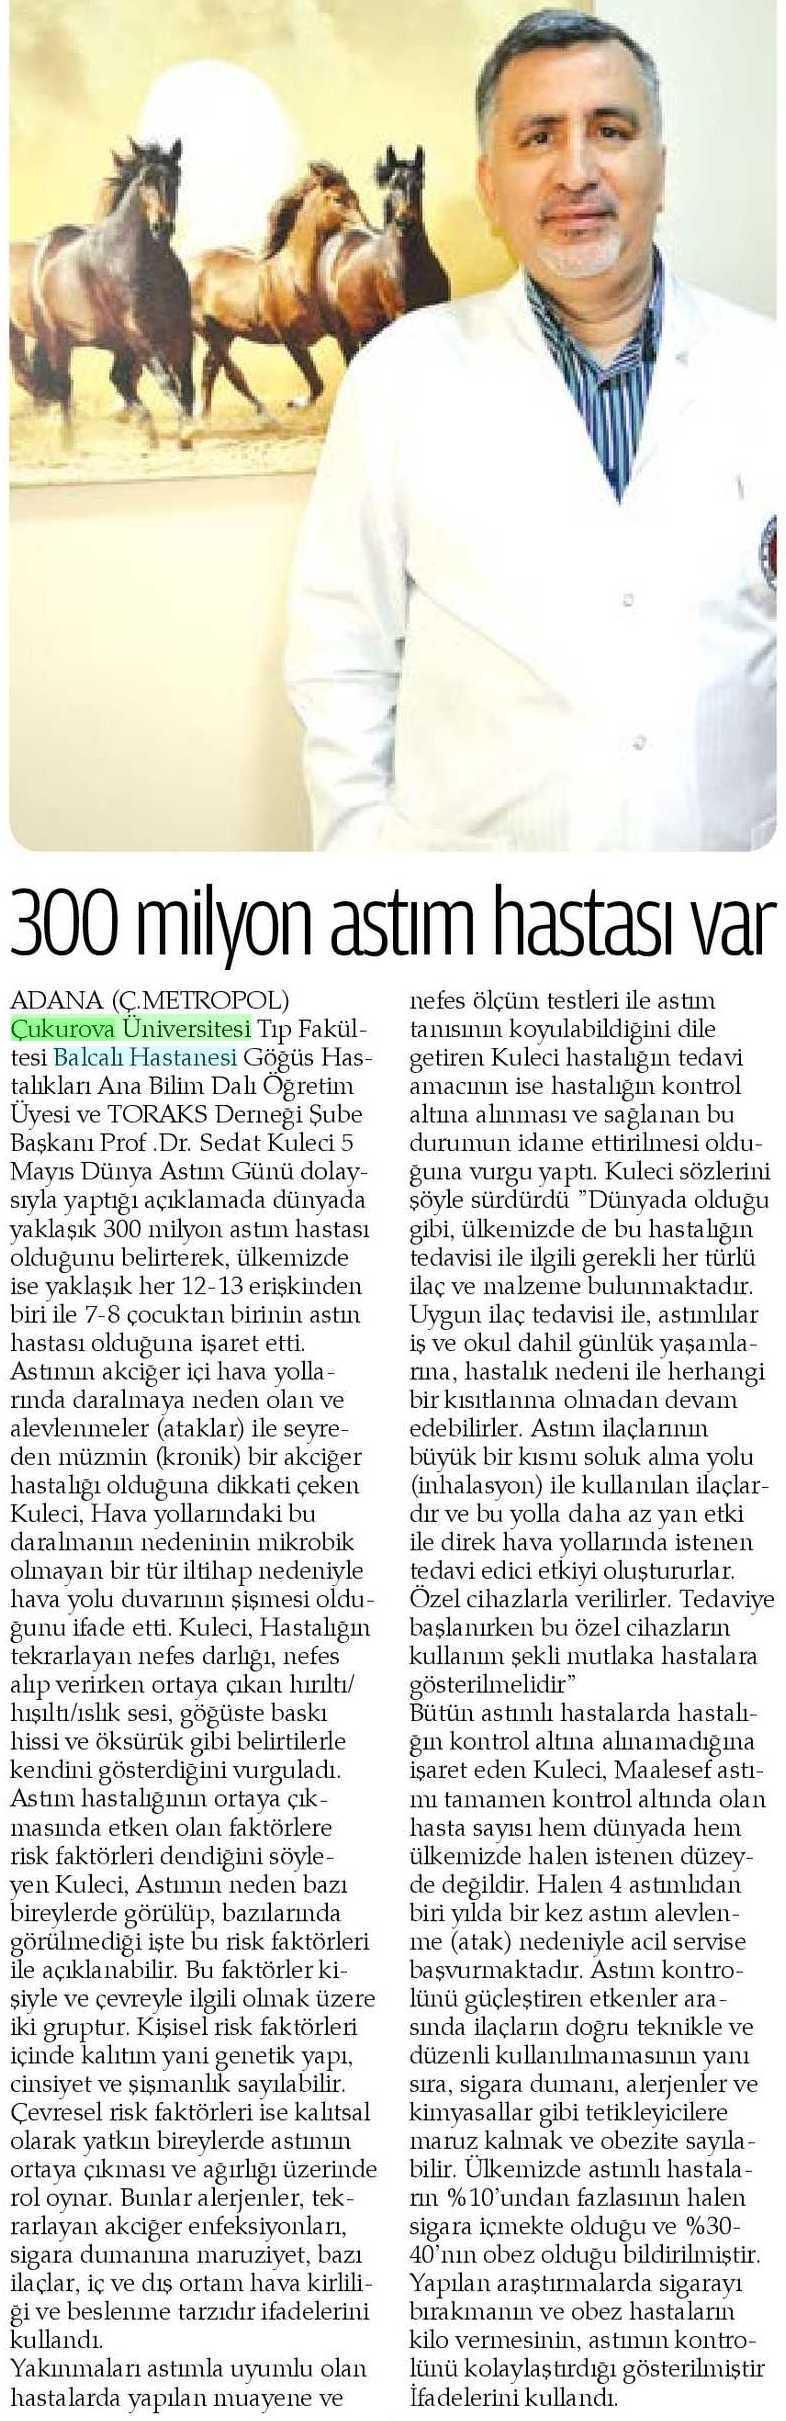 300 MILYON ASTIM HASTASI VAR Yayın Adı : Adana